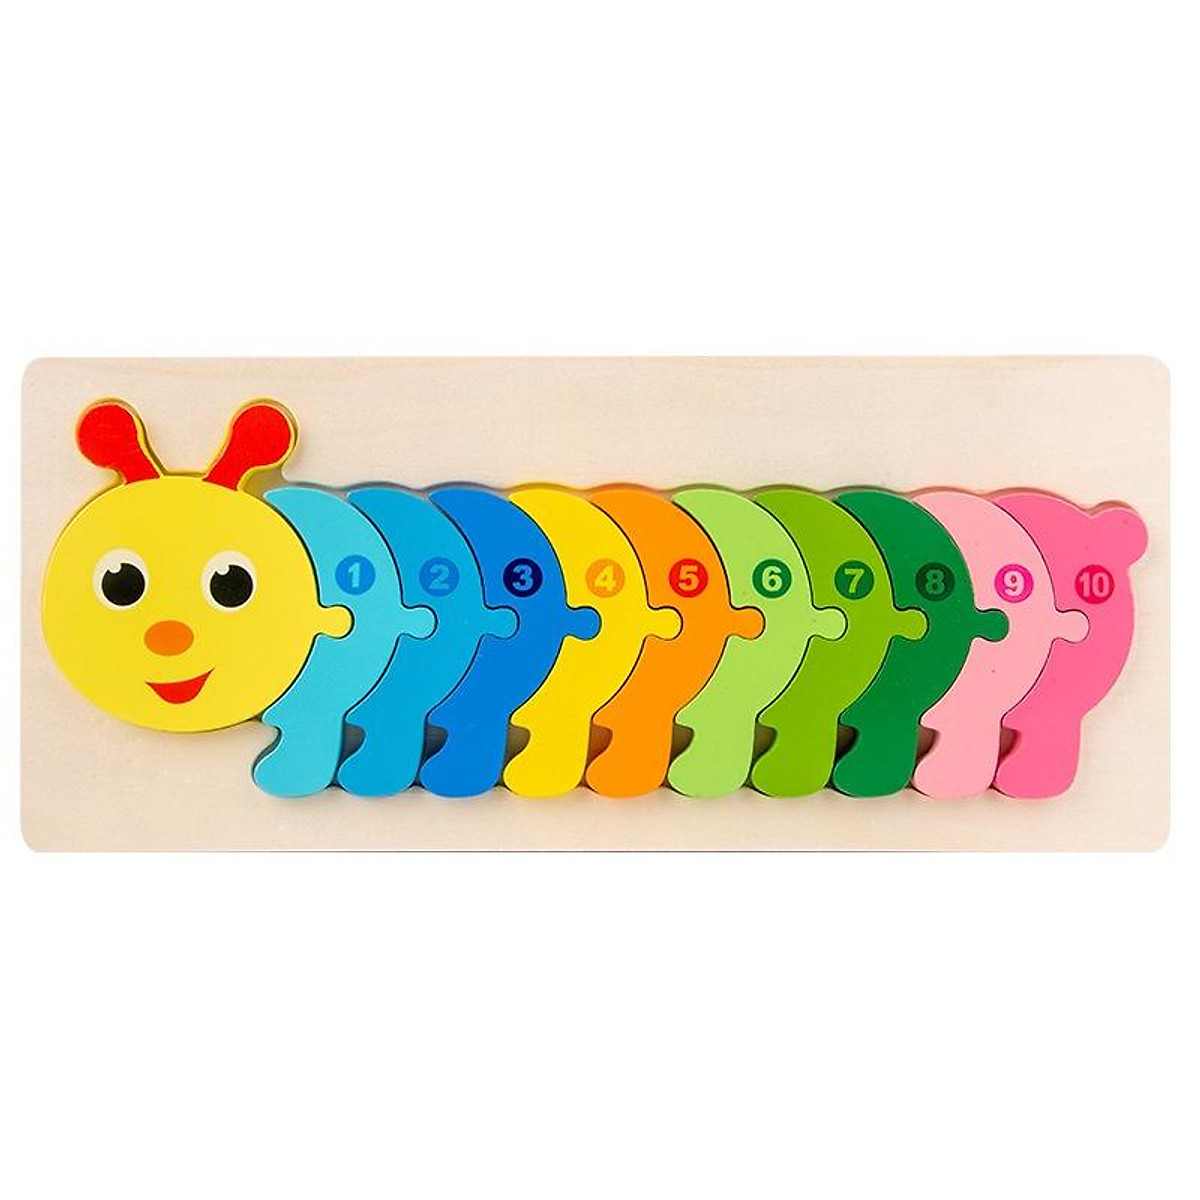 Đồ Chơi Trẻ Em - Combo 5 Tranh Ghép Gỗ Cho Bé Tranh Ghép Gỗ 3D - Tranh Nối Số Từ 1 - 10 đa dạng màu sắc giúp bé phát triển trí tuệ